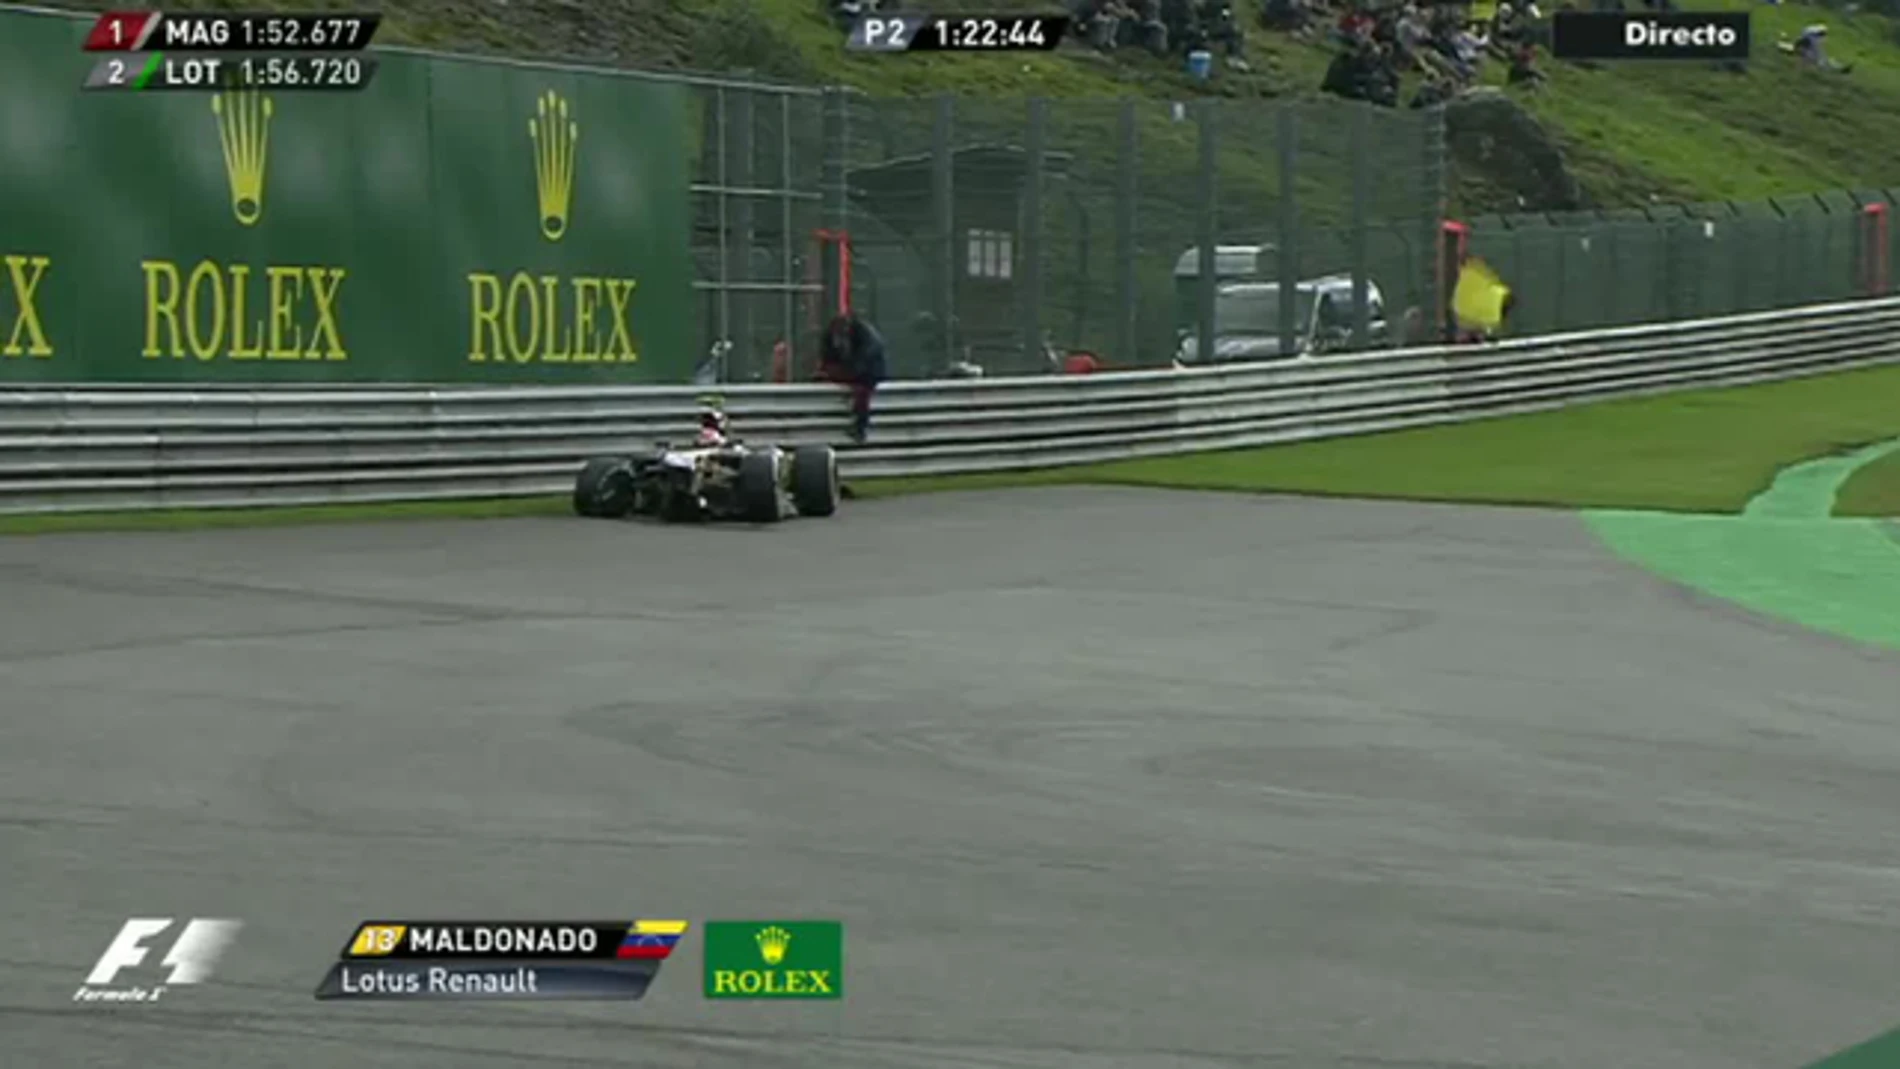 El Lotus de Maldonado, accidentado